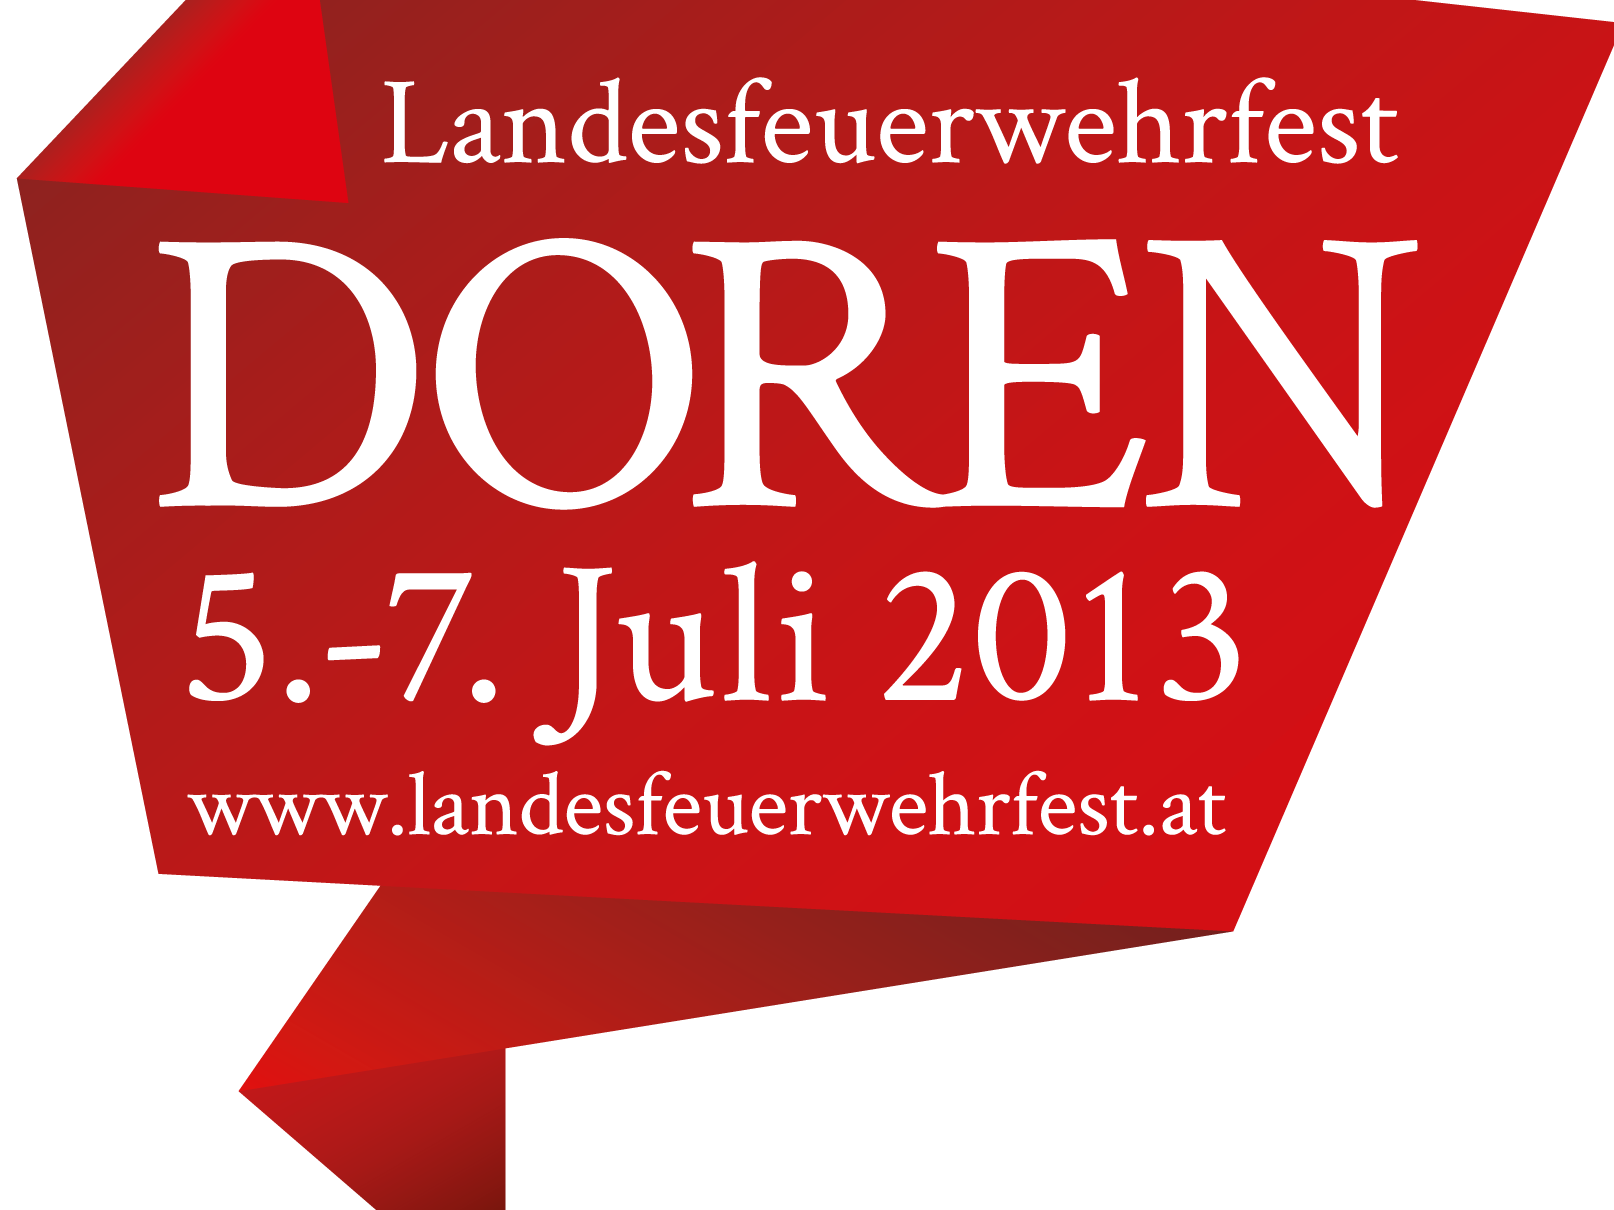 www.landesfeuerwehrfest.at